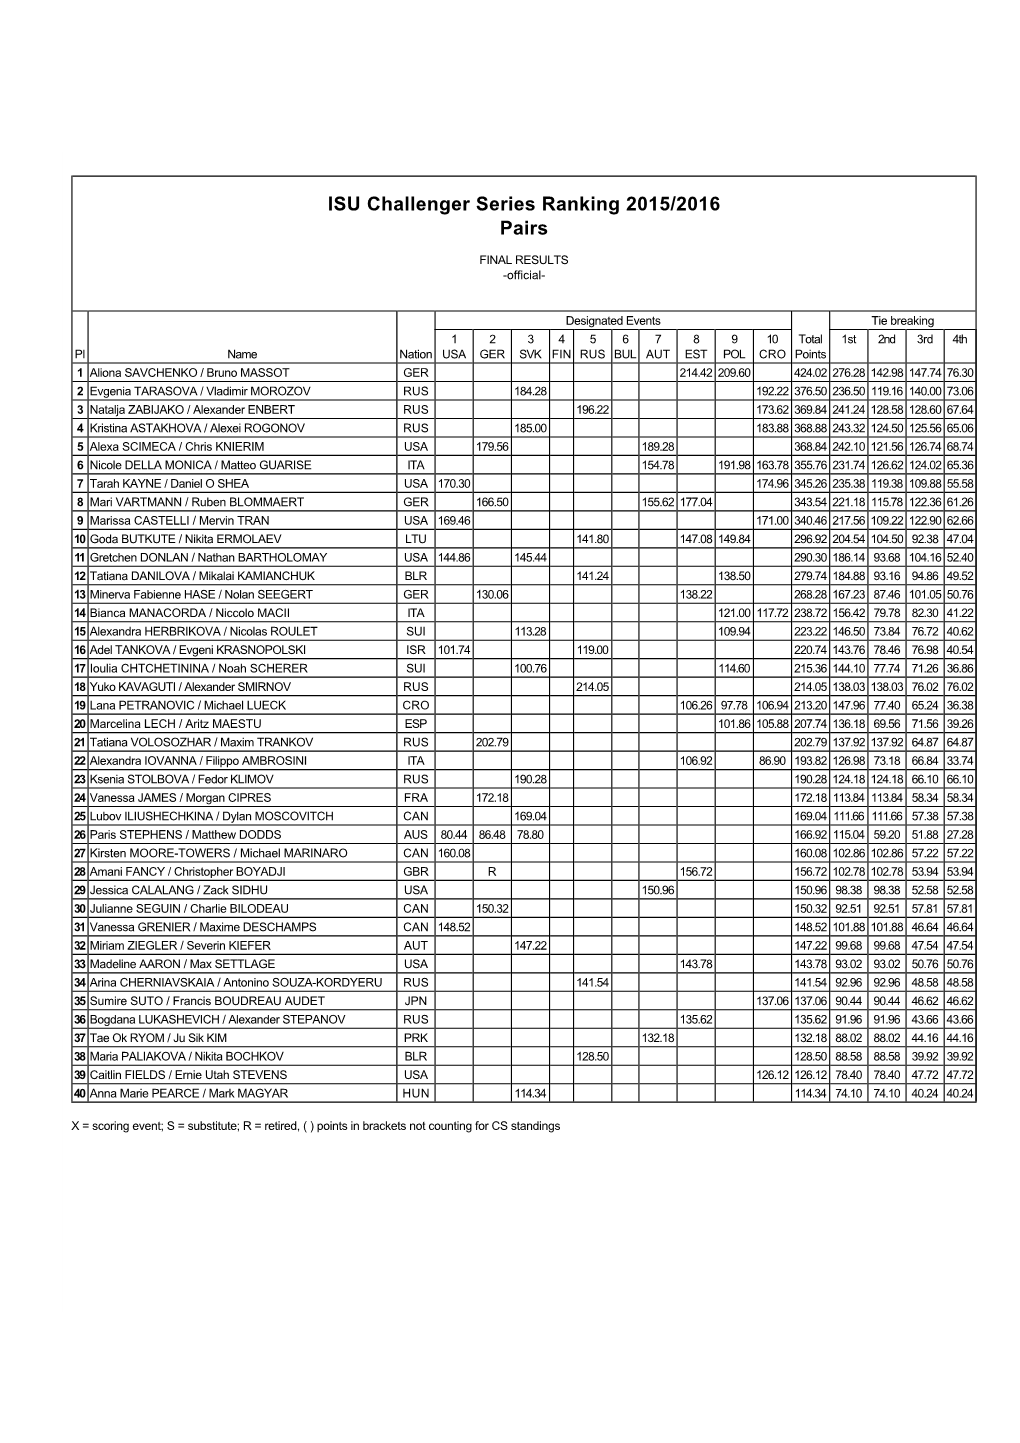 ISU Challenger Series Ranking 2015/2016 Pairs